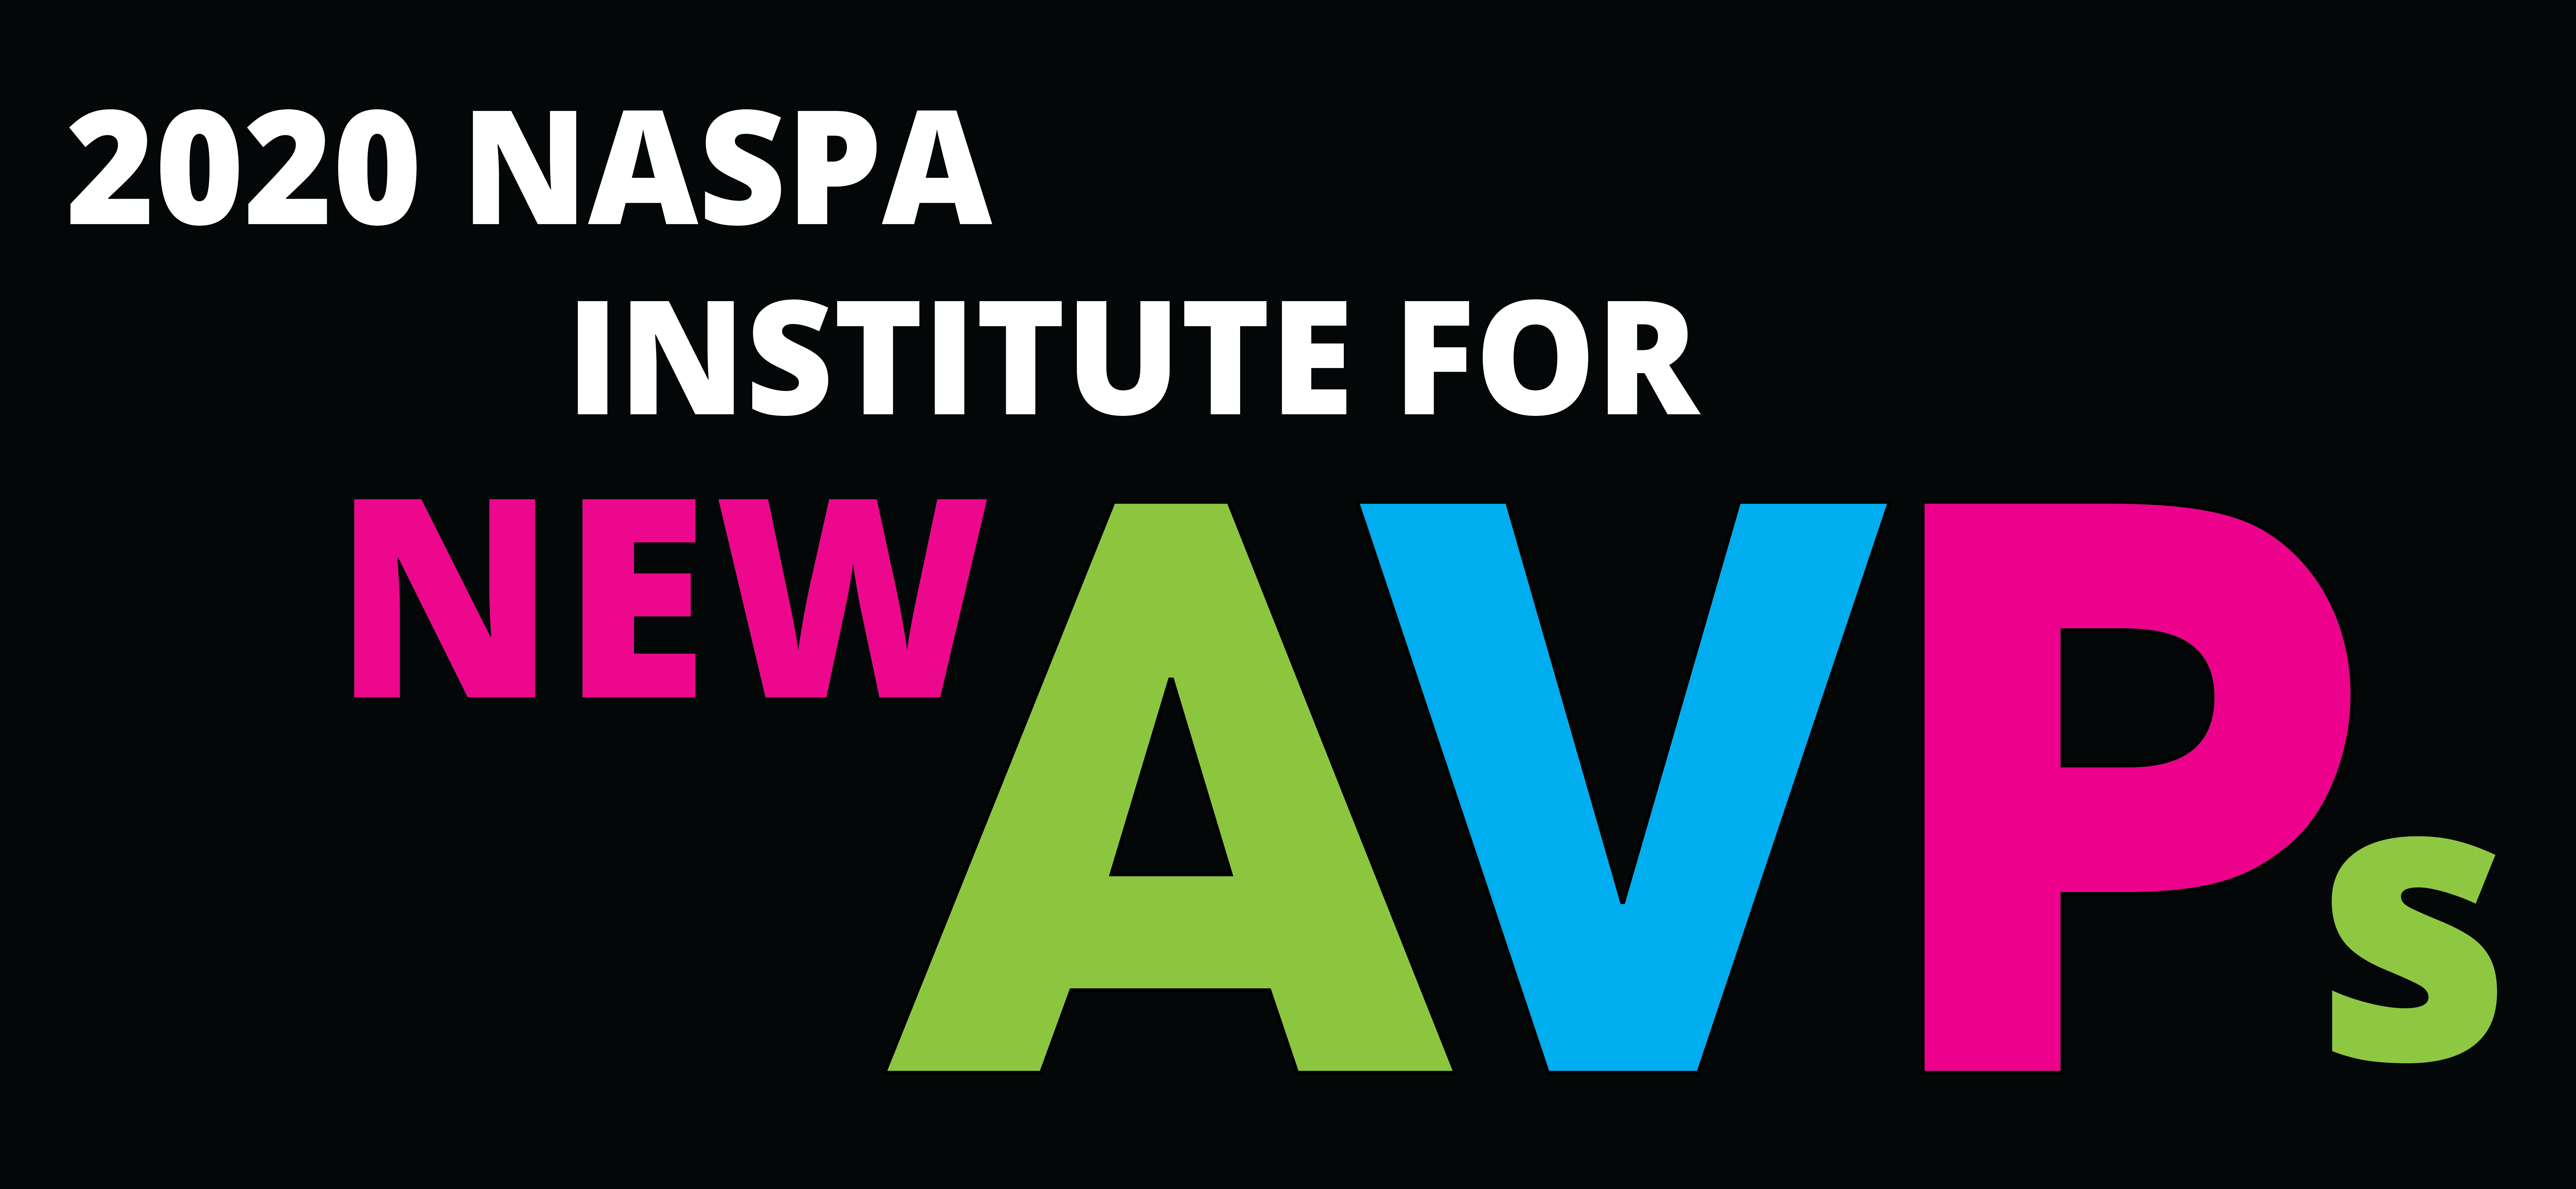 2020 NASPA Institute for New AVPs